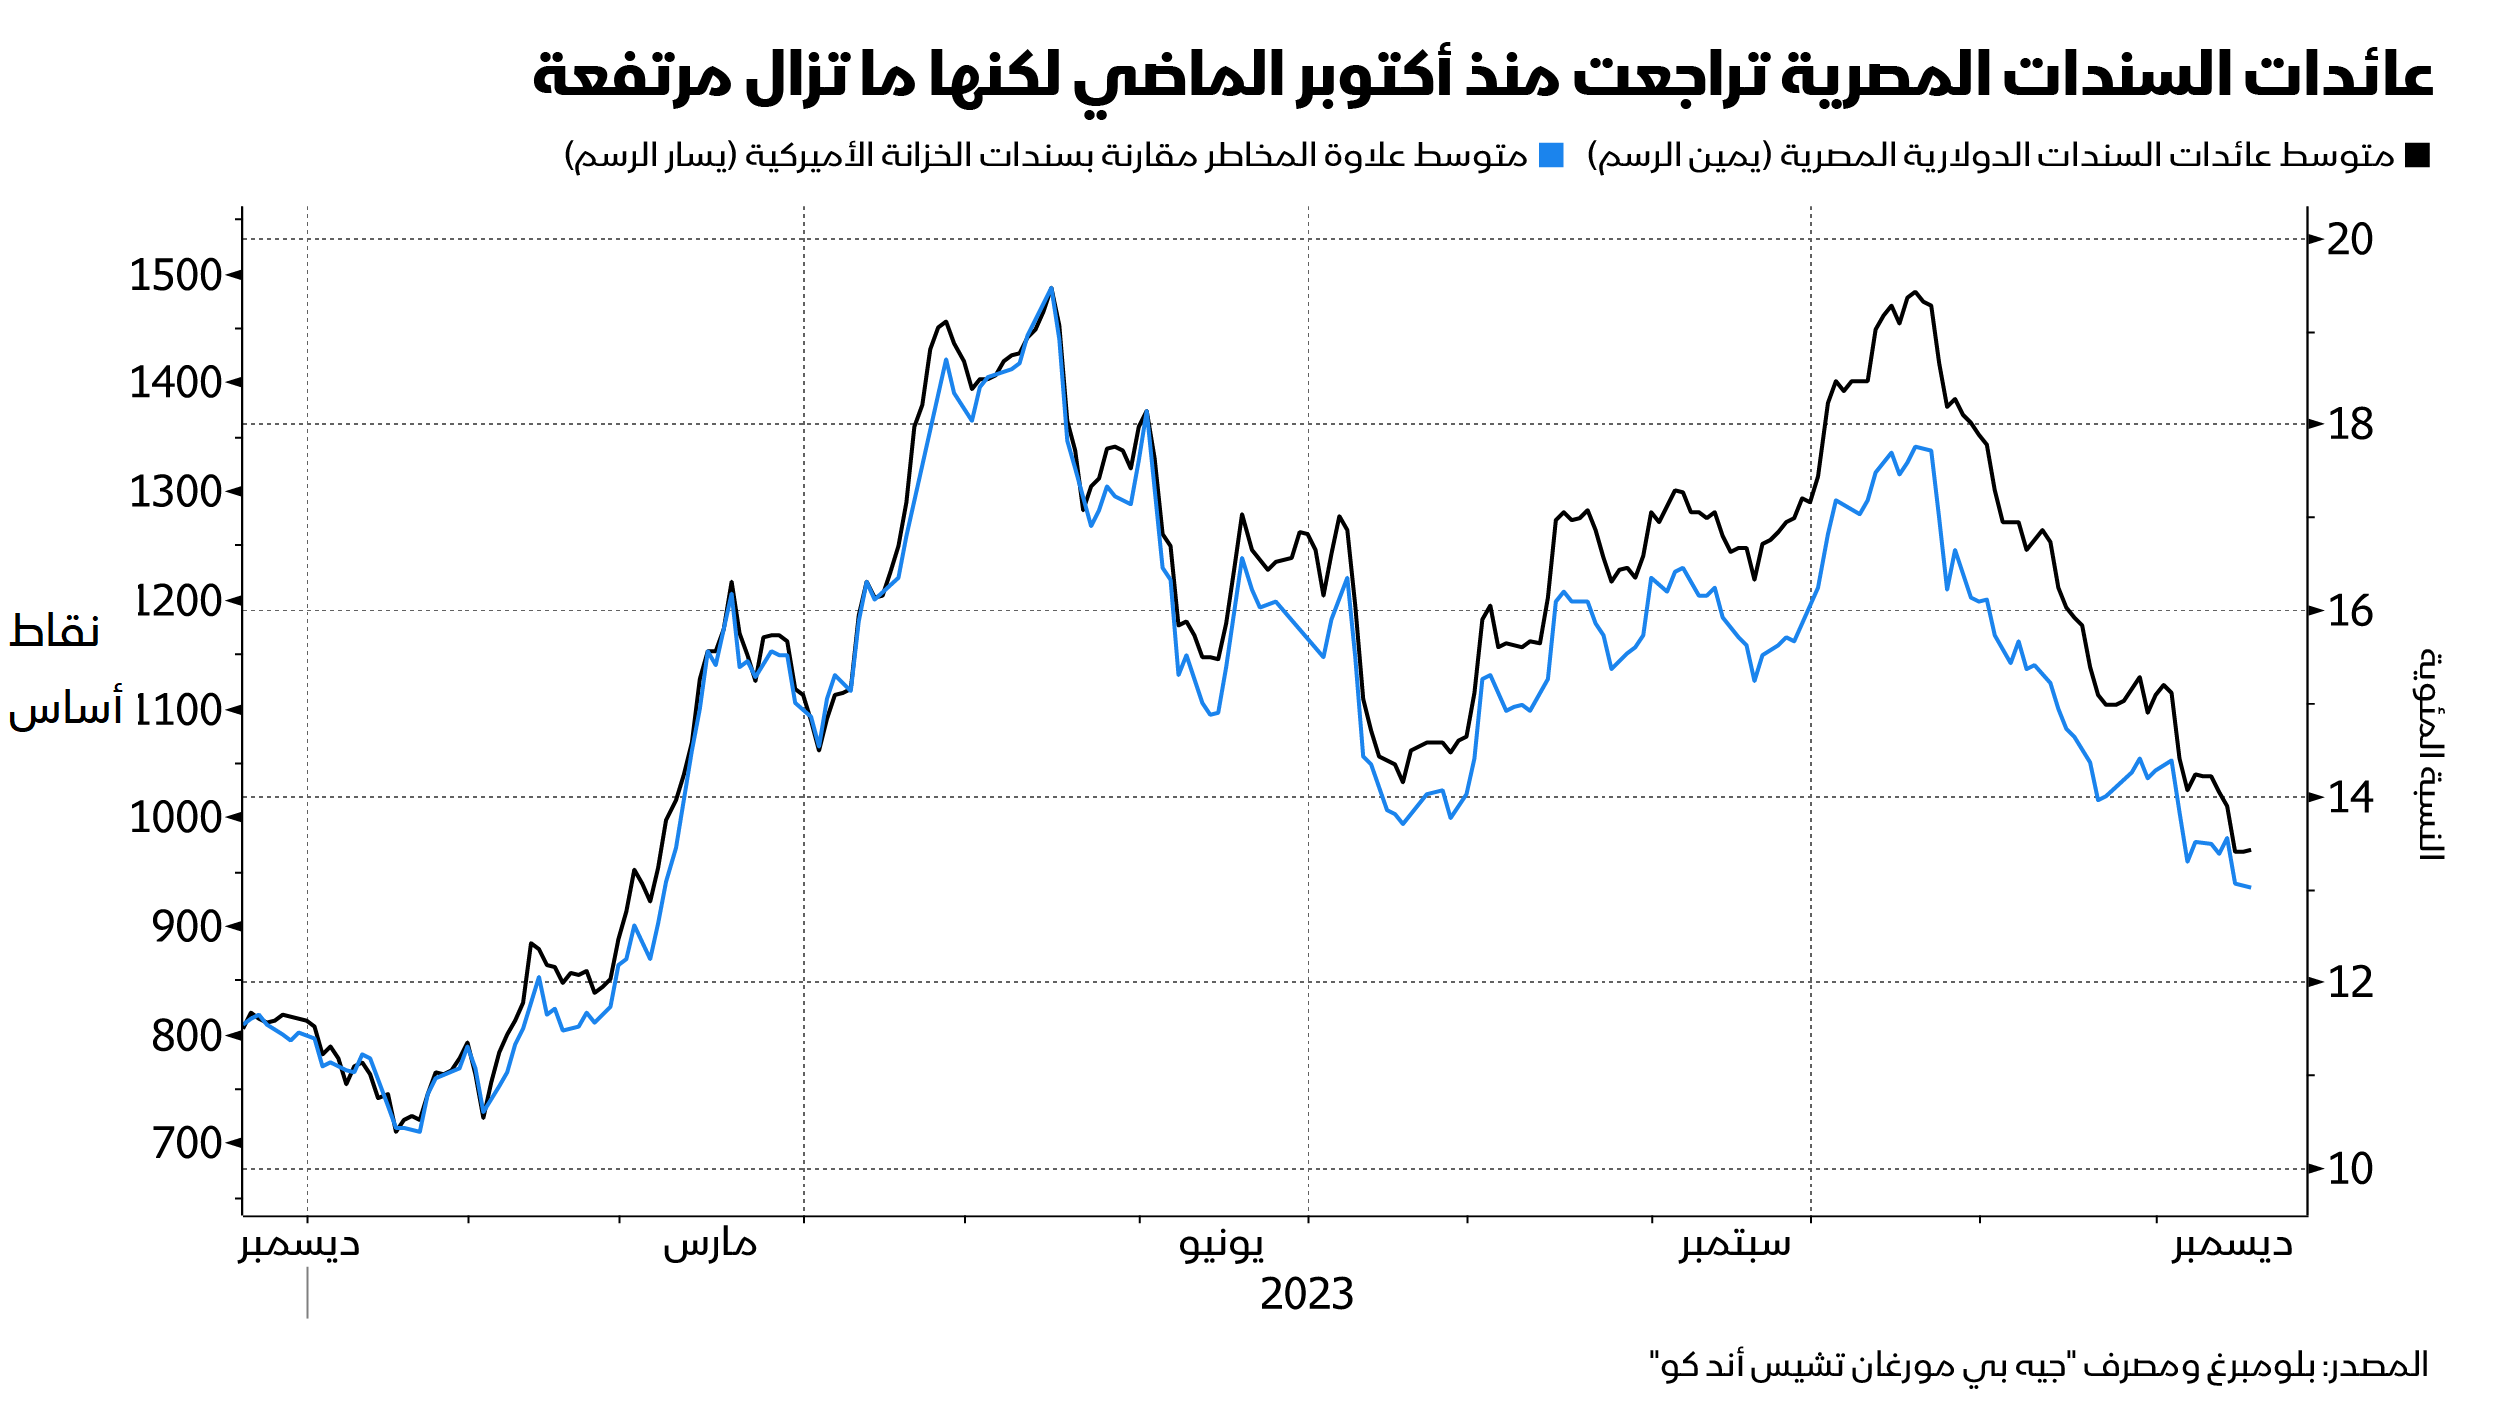 رسم بياني يوضح تغير علاوة مخاطر السندات السيادية المصرية مقابل أذون الخزانة الأميركية